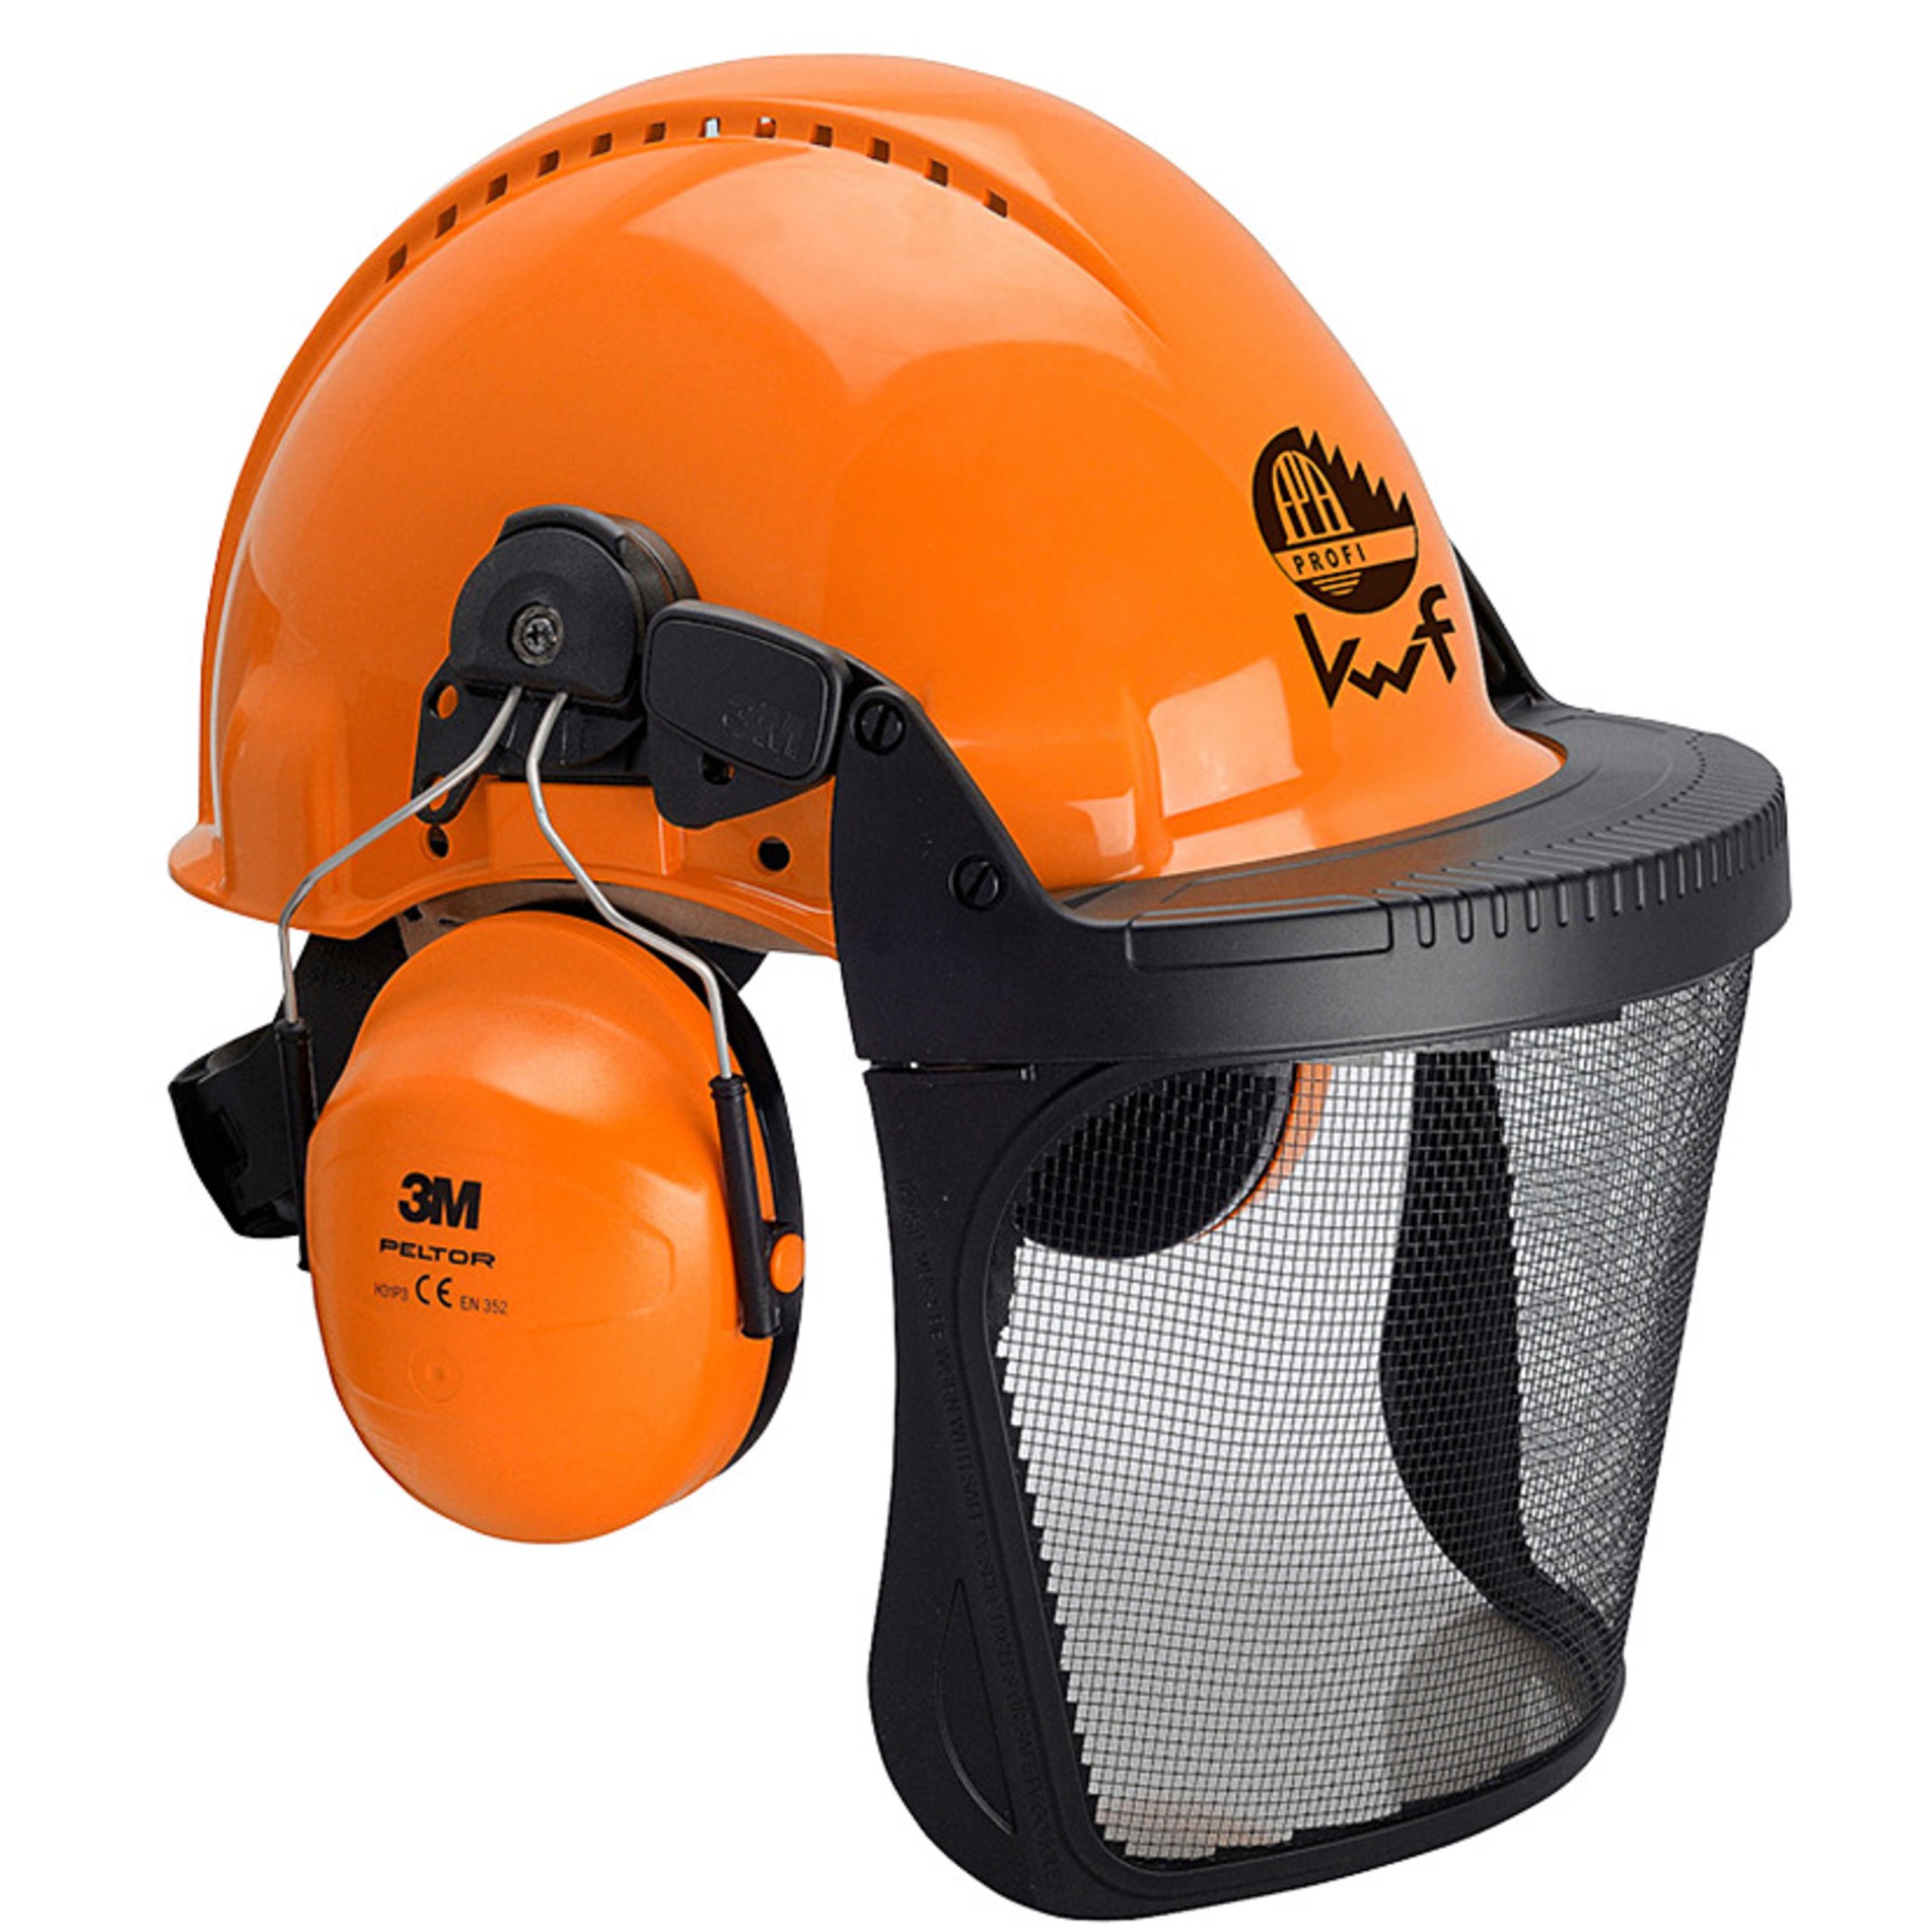 Kopfschutz-Kombination G3000M H31, V5C orange